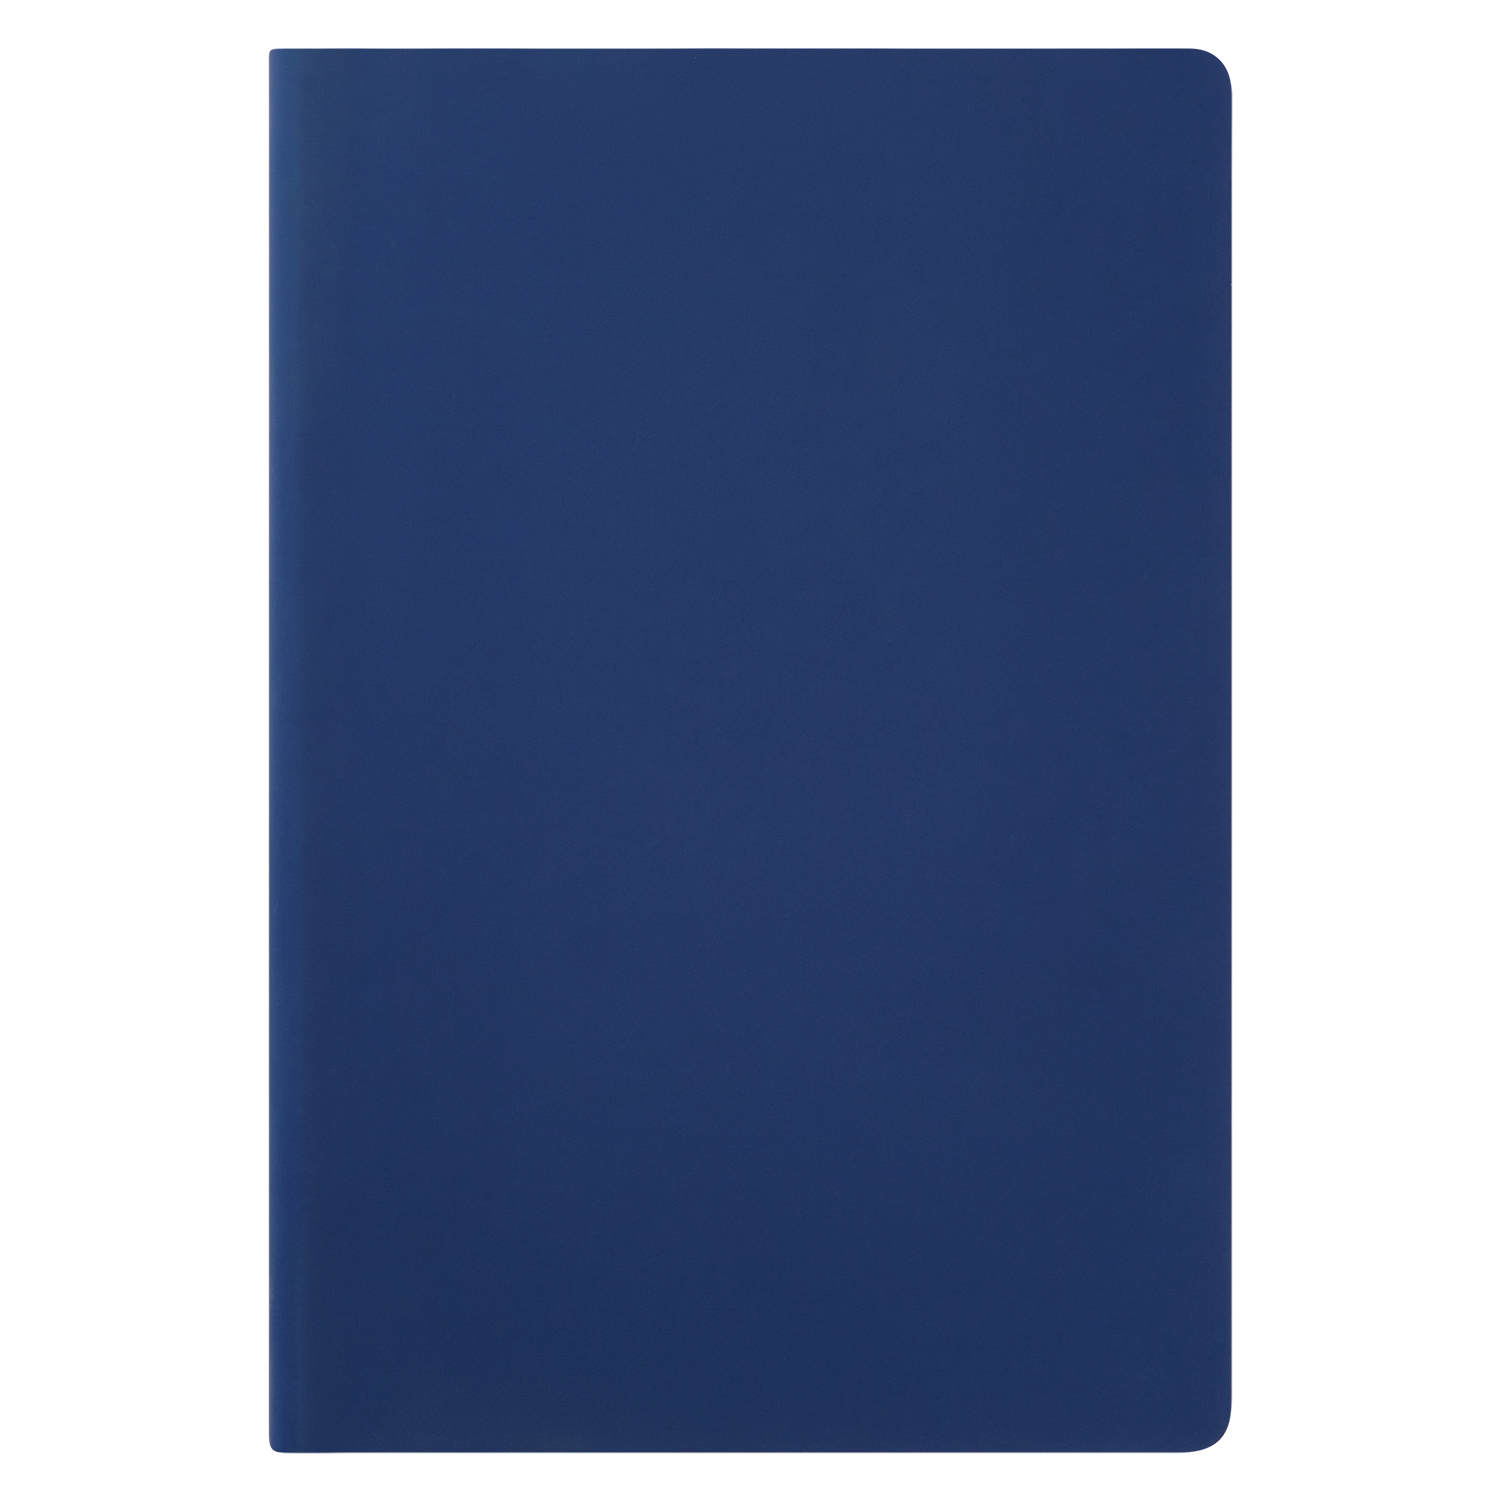 Ежедневник Spark недатированный, синий (без упаковки, без стикера)